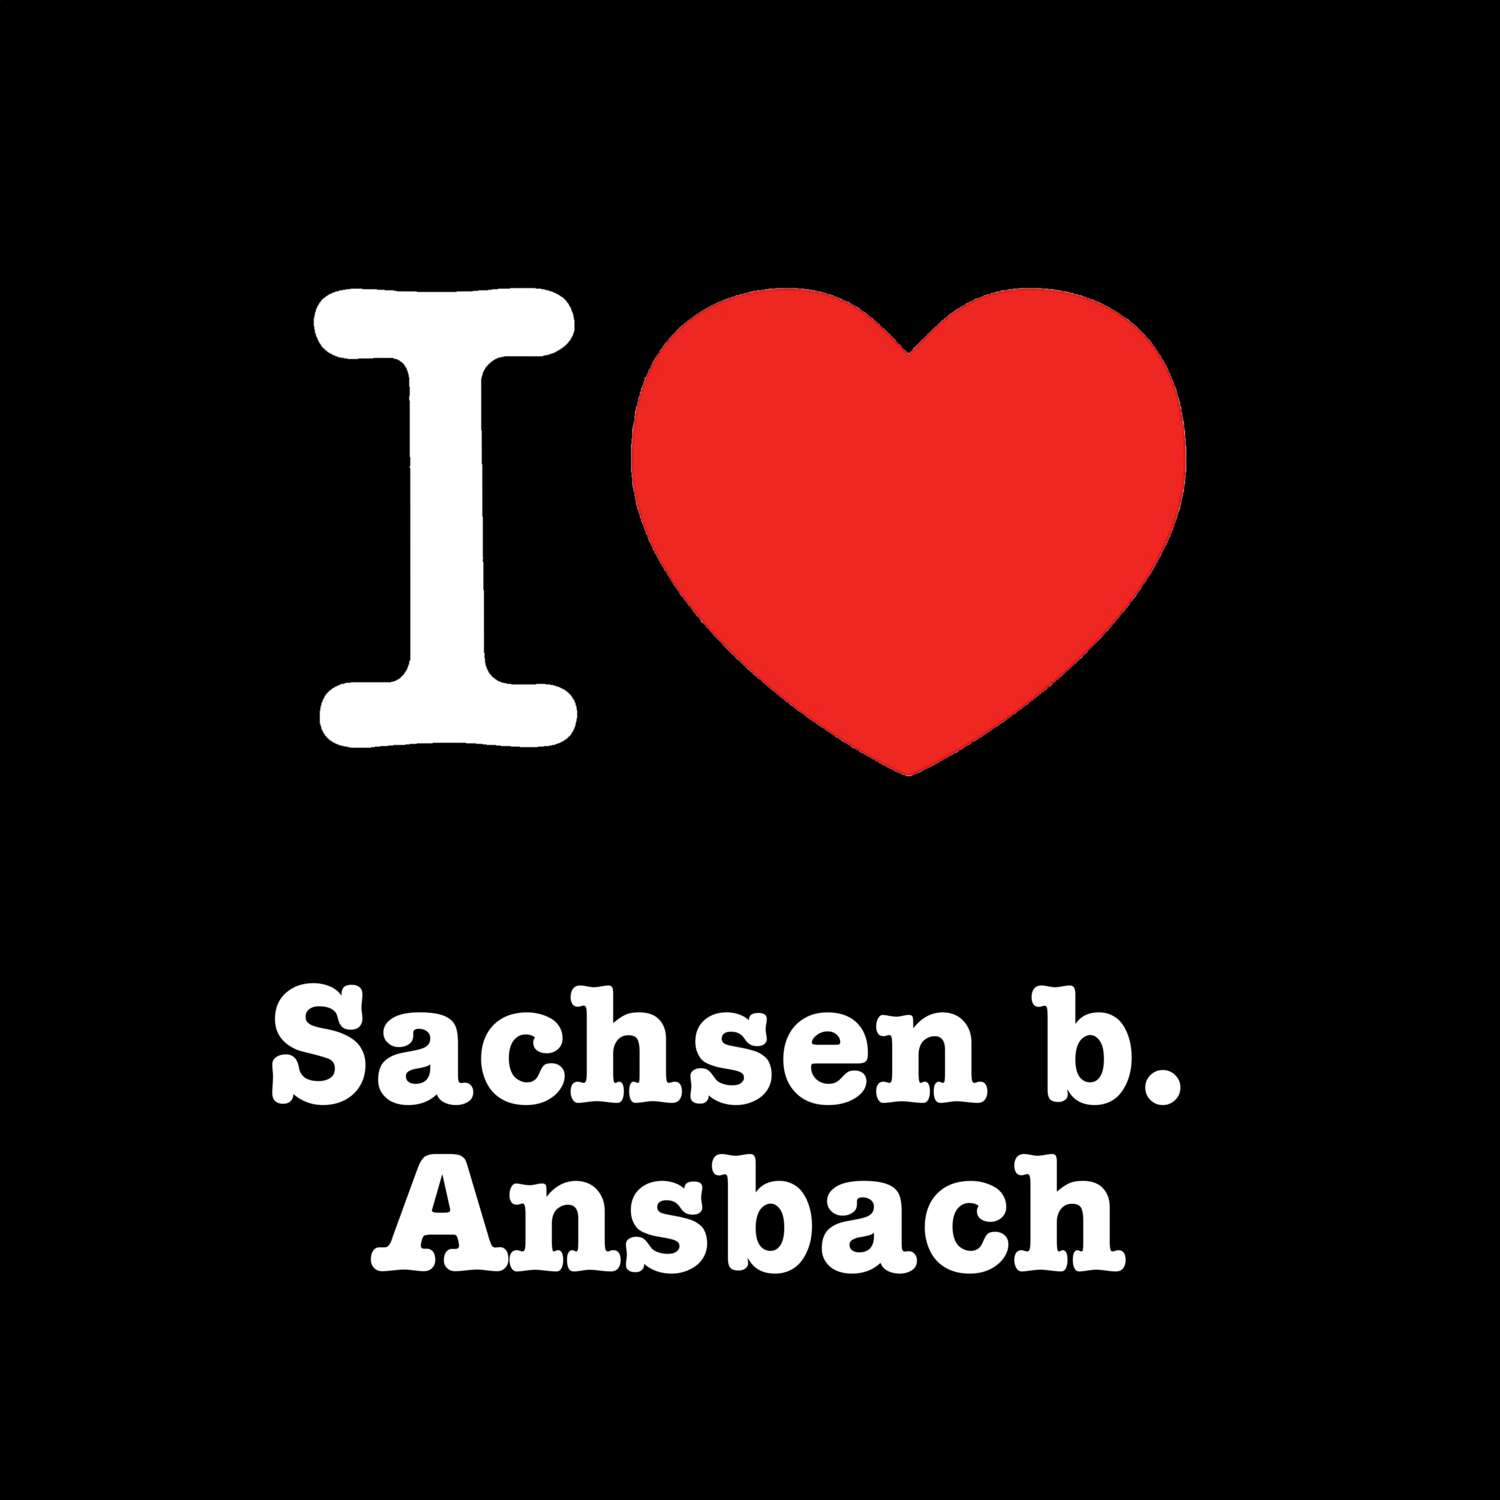 Sachsen b. Ansbach T-Shirt »I love«